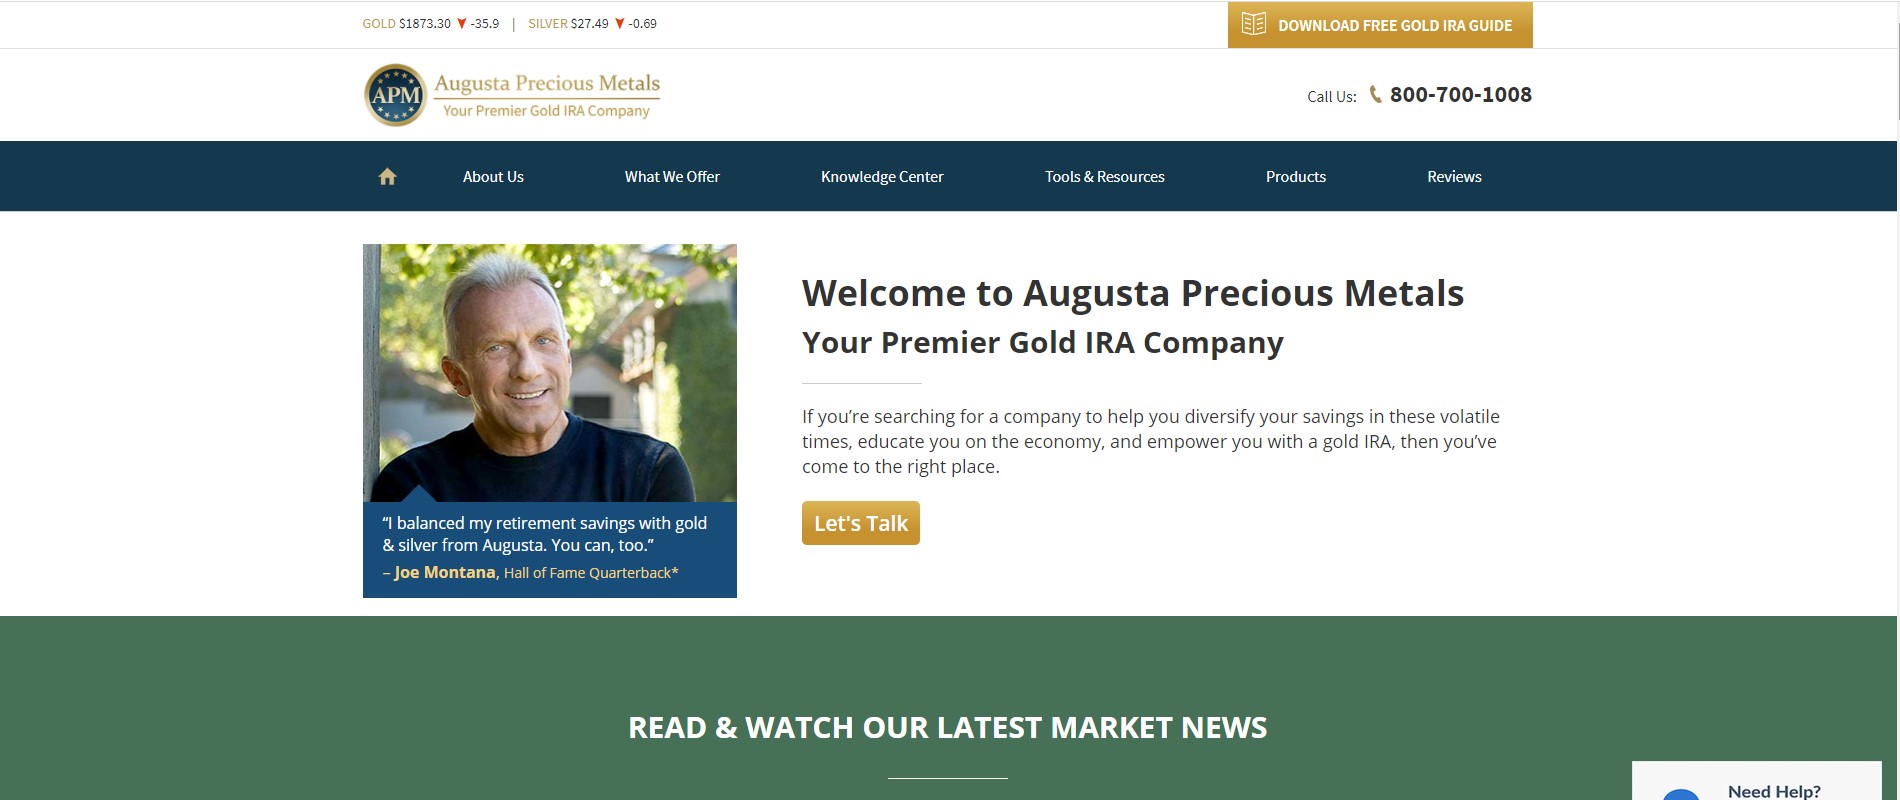 Augusta Precious Metals website